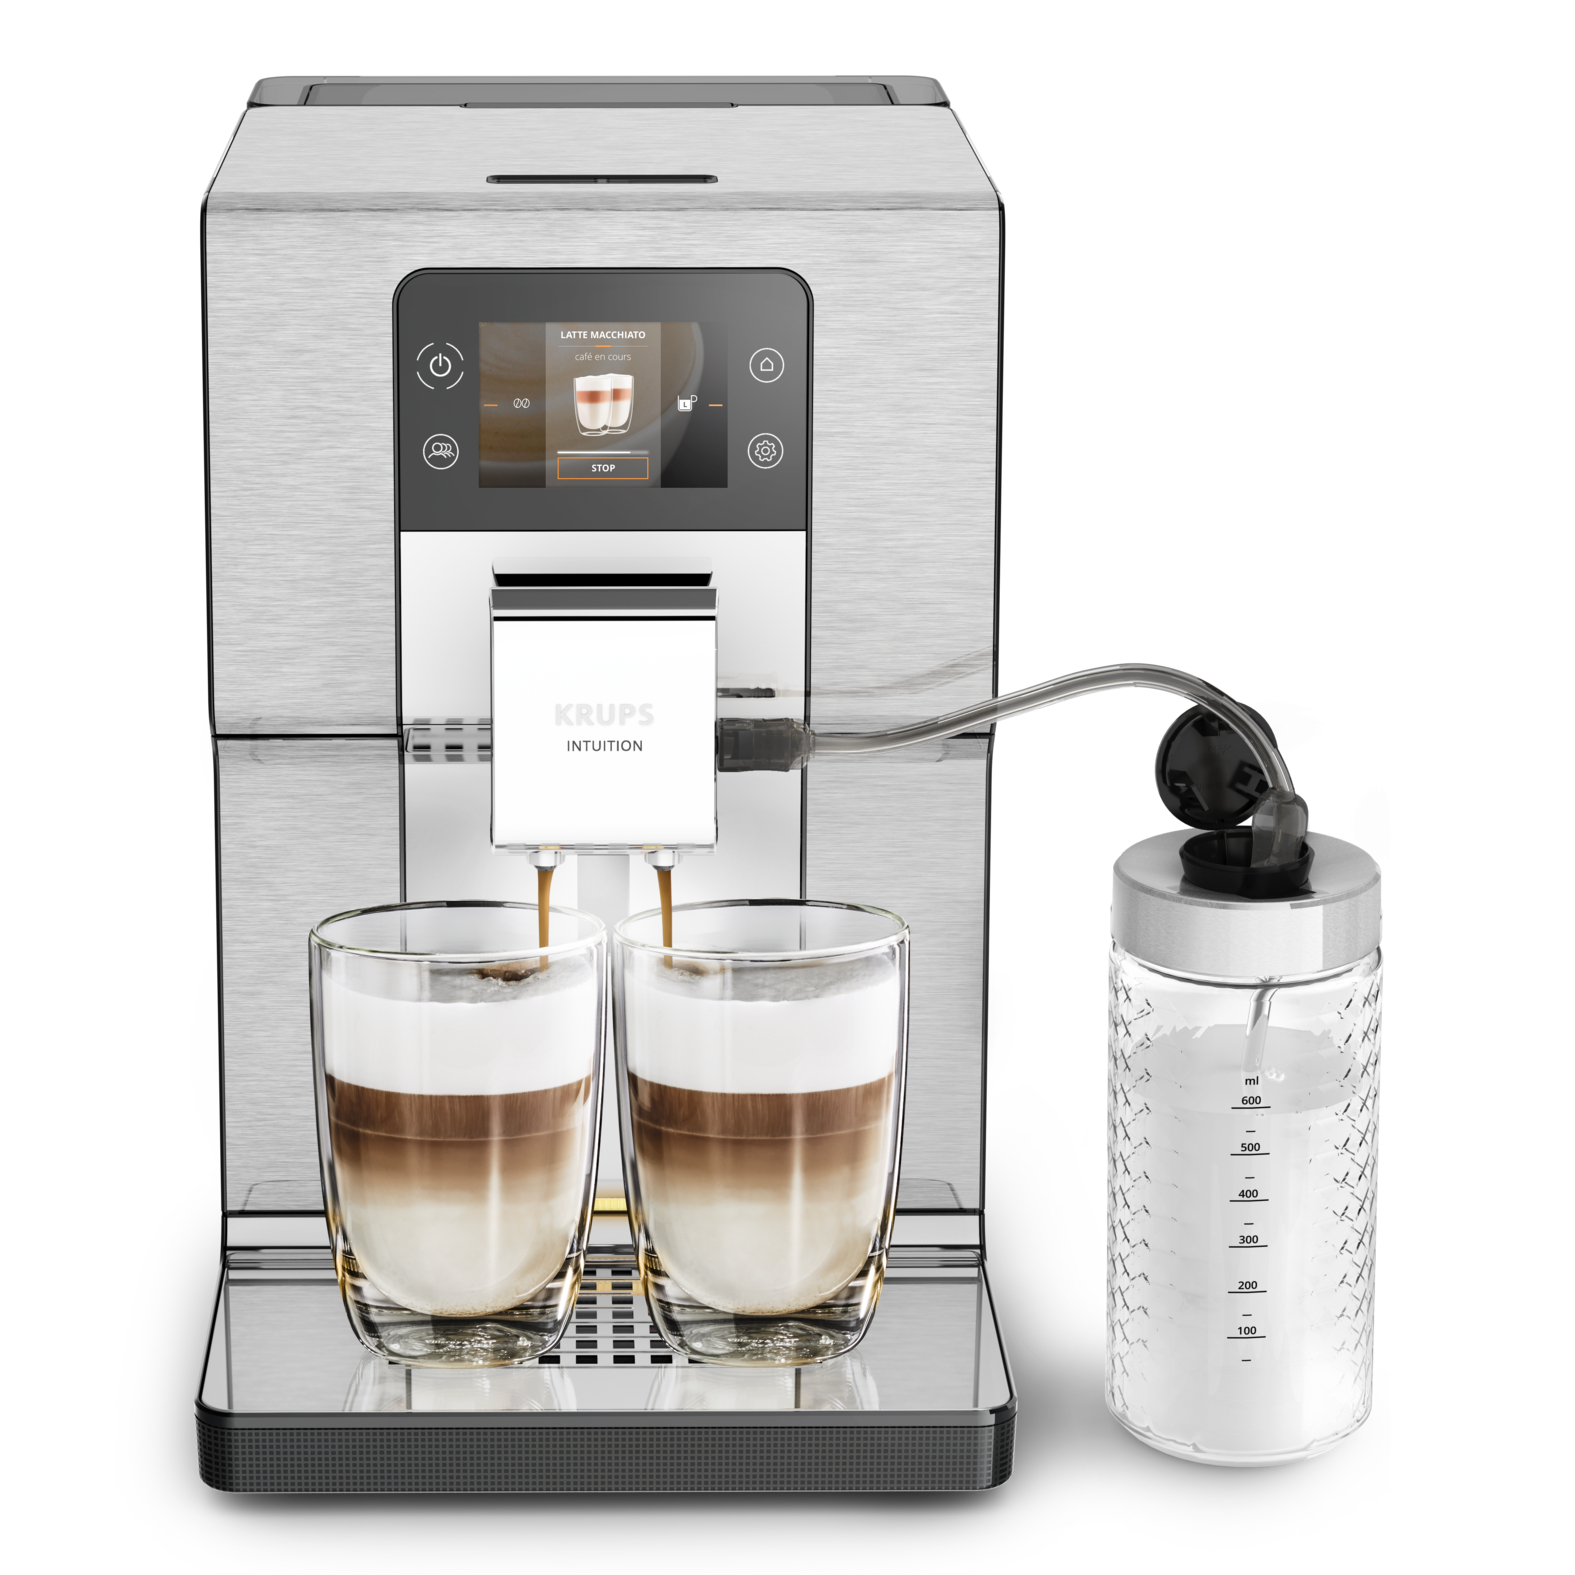 

Автоматическая кофемашина Intuition Experience + EA877D10, Черный/металлик, Intuition Experience + EA877D10